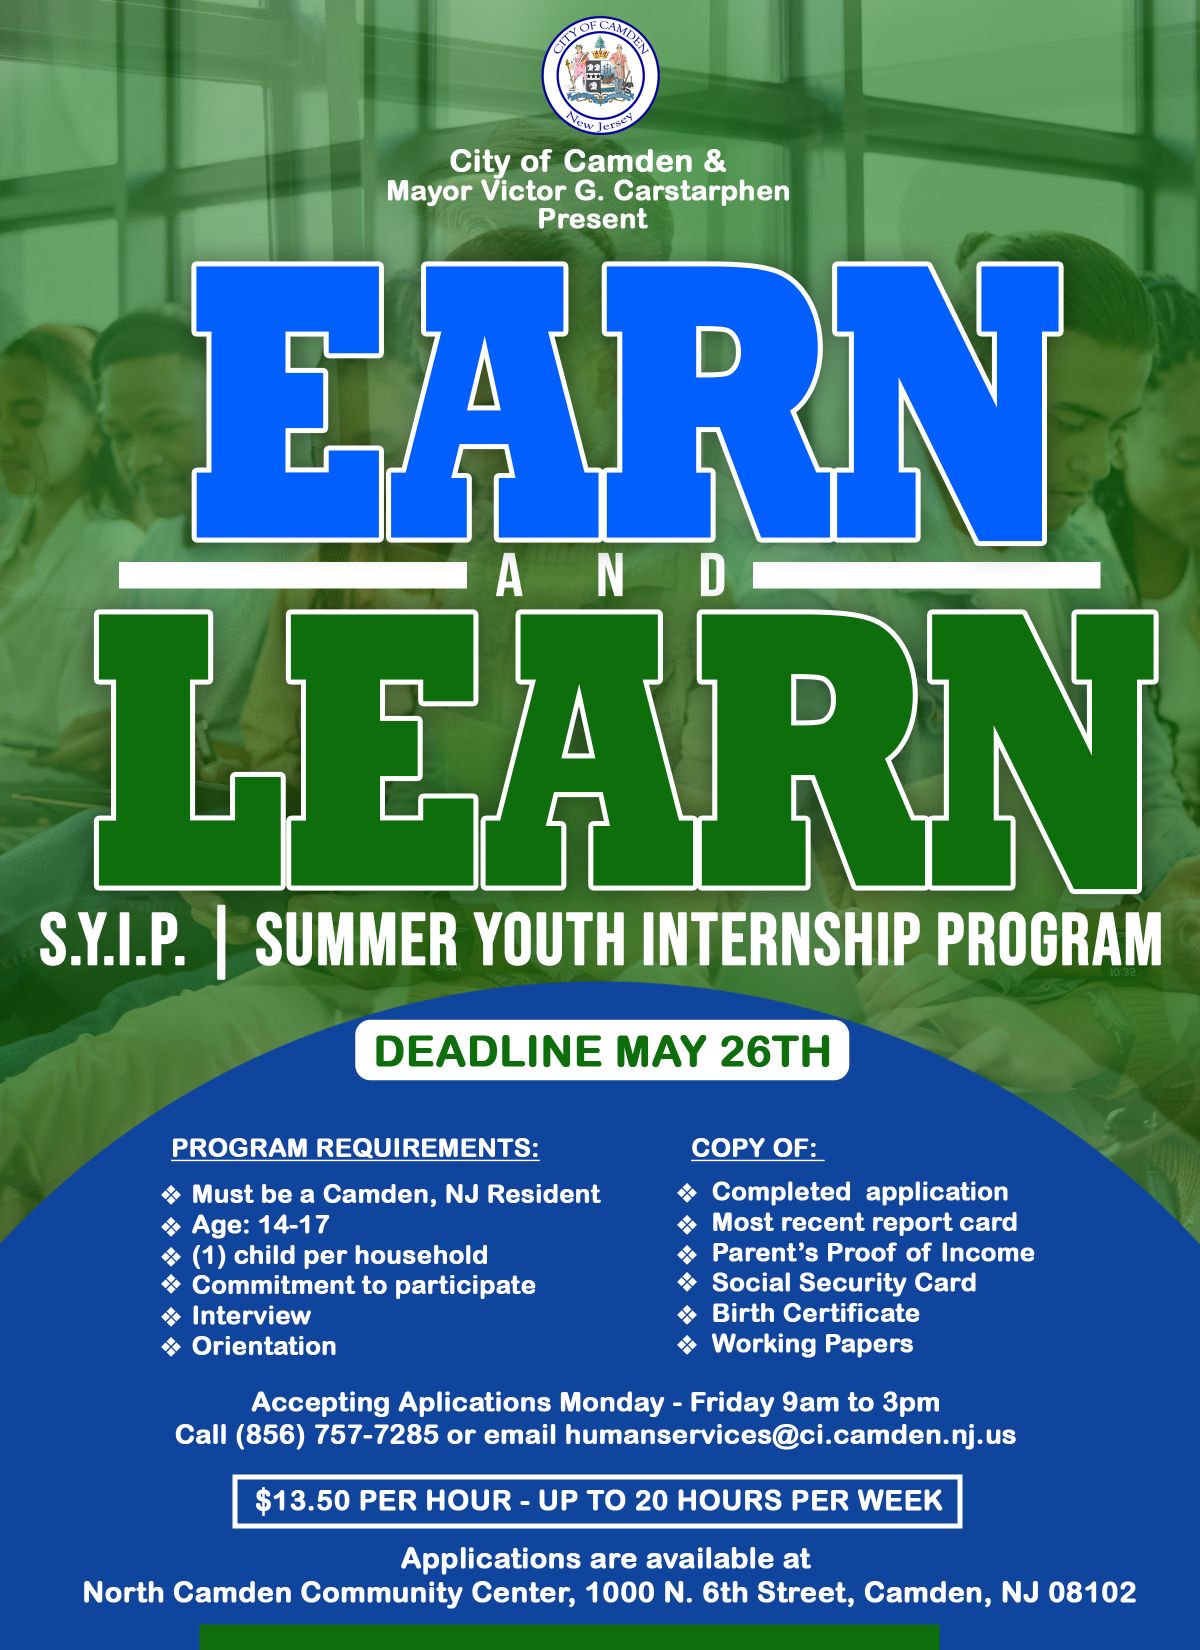 Summer Youth Internship Program The City of Camden